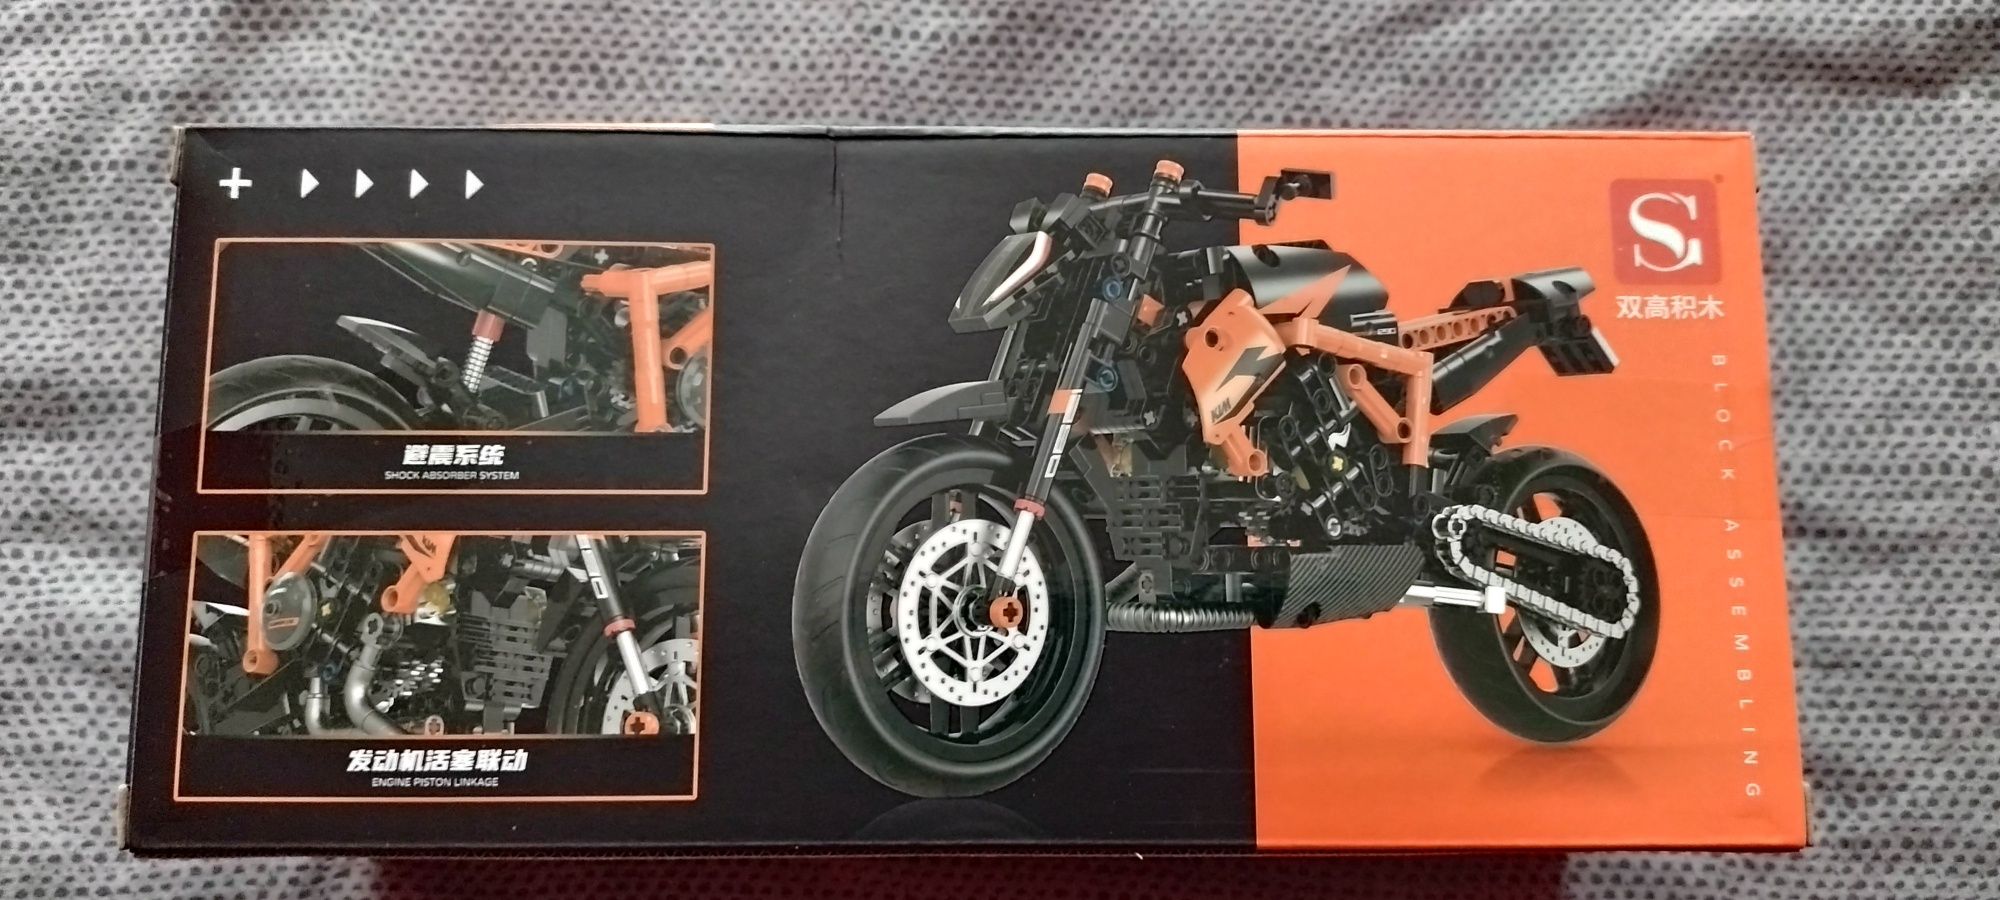 Klocki motocykl motor KTM Duke jak LEGO technic